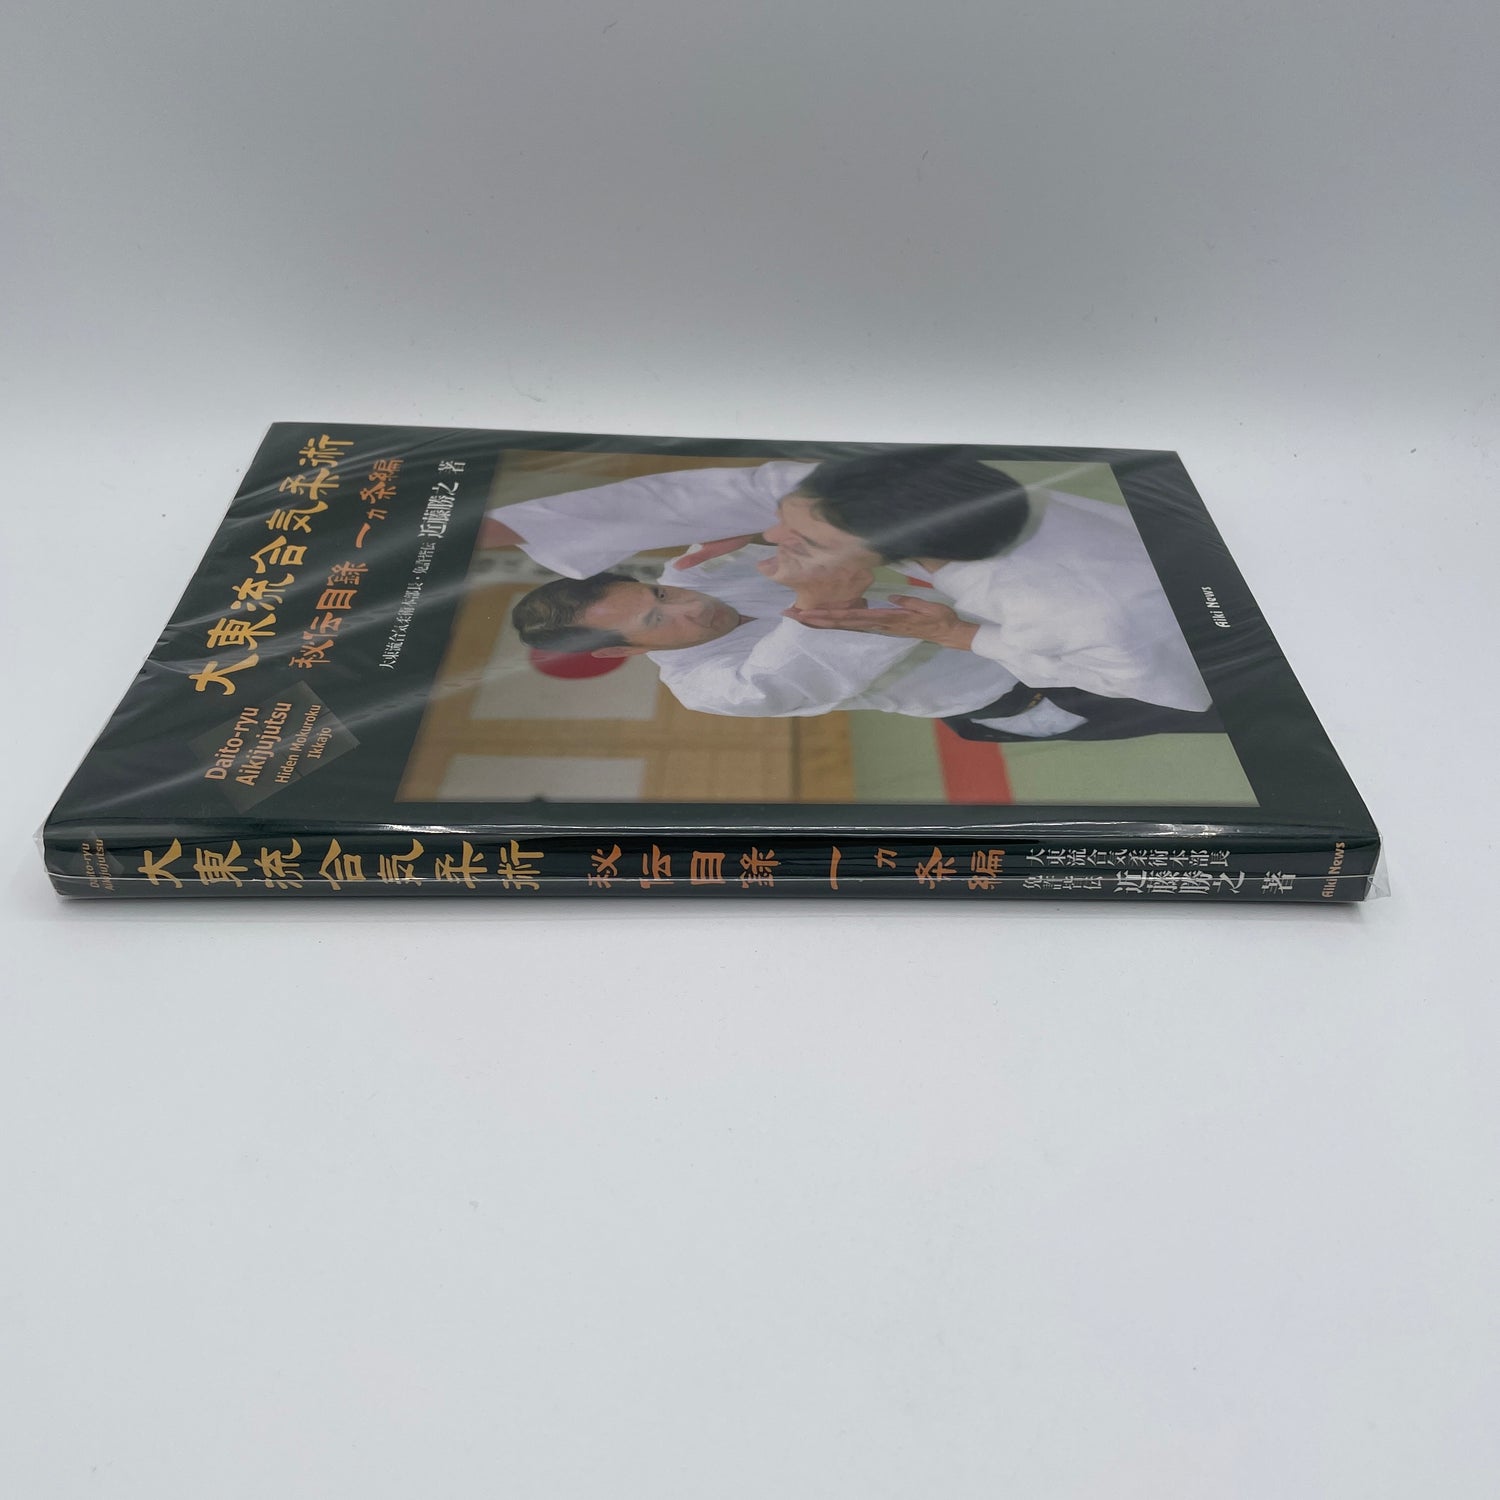 Daito Ryu Aikijujutsu Hiden Mokuroku Ikkajo Book by Katsuyuki Kondo (Preowned)